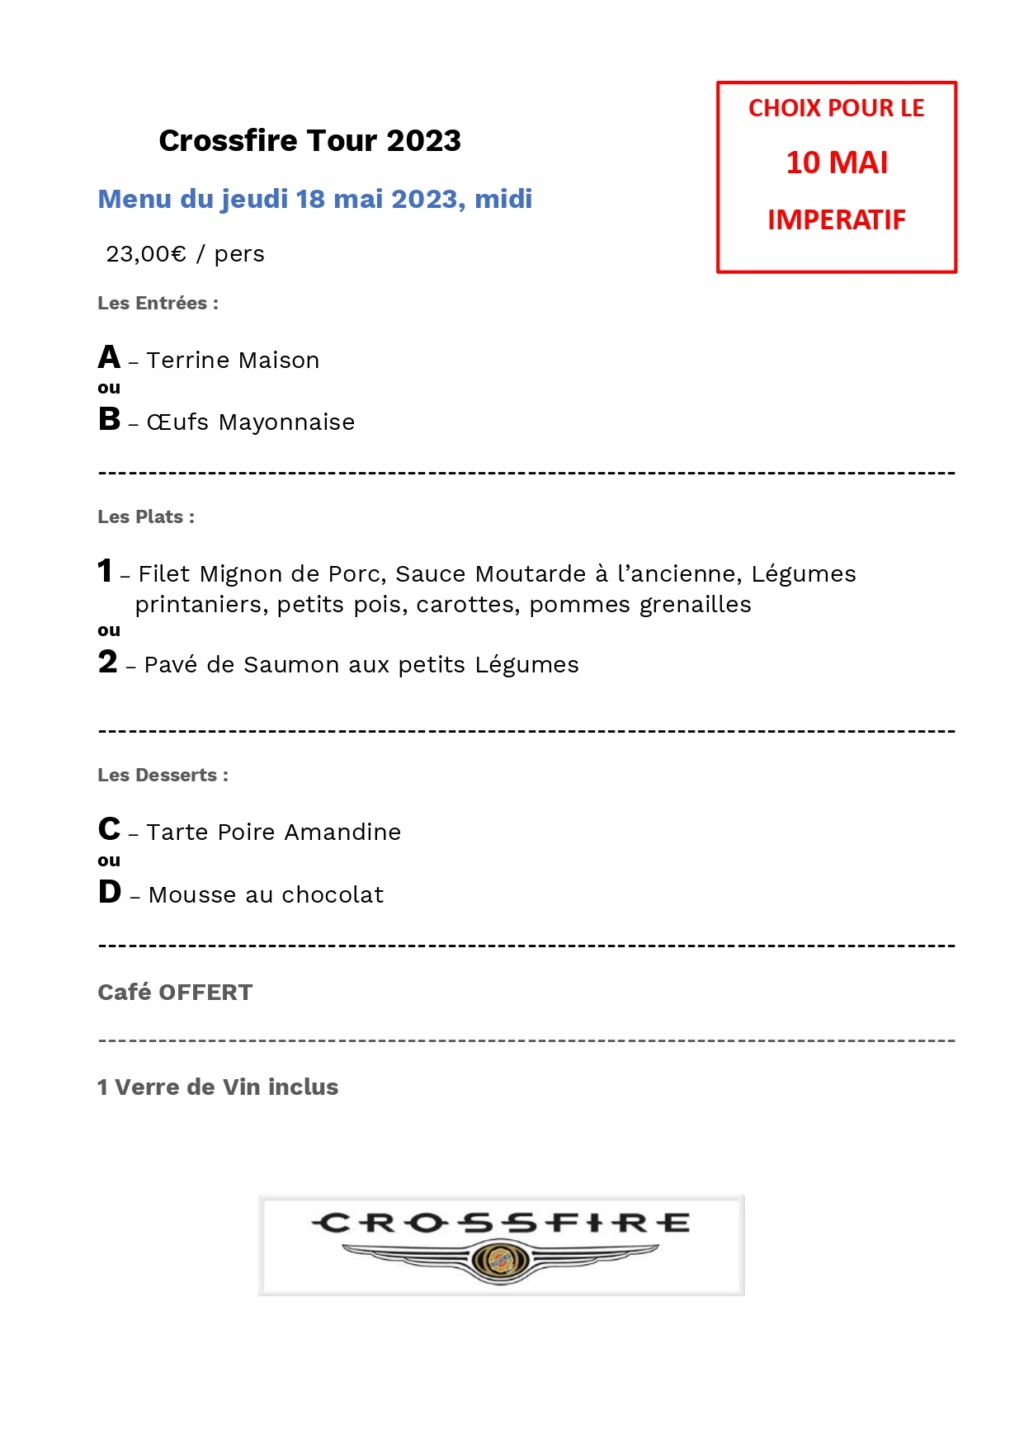 Crossfire Tour 2023 - Road trip, La Drôme provençale et l'Ardèche voisine. - Page 7 Menu_j10